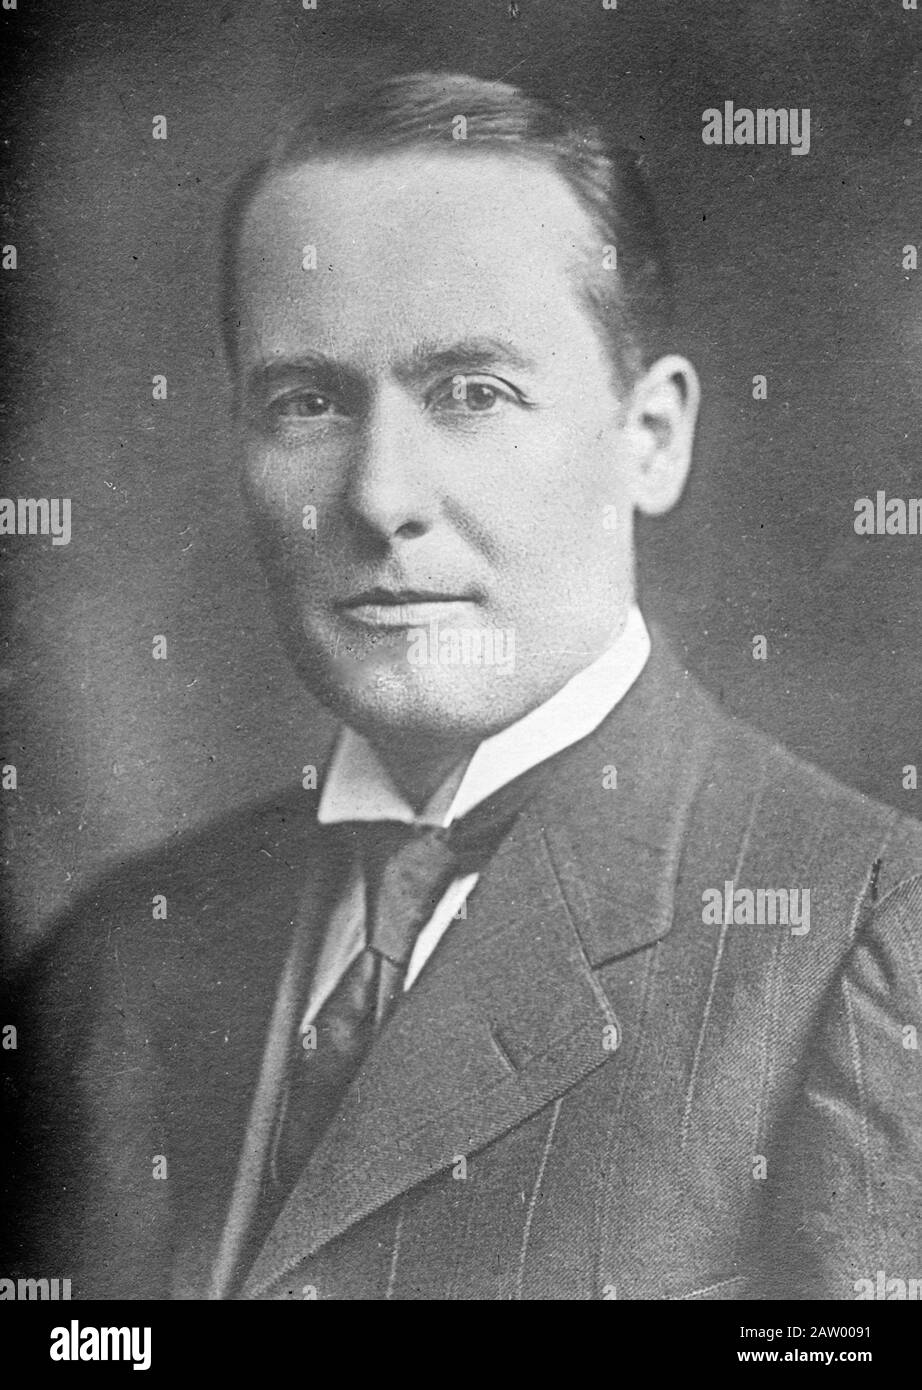 Foto zeigt Steven Geyer Porter (1869-1930), republikanisches Mitglied des US-Repräsentantenhauses aus Pennsylvania und wenig erfolgreicher Kandidat für das Bürgermeisteramt von Pittsburgh im Jahr 1913. Stockfoto